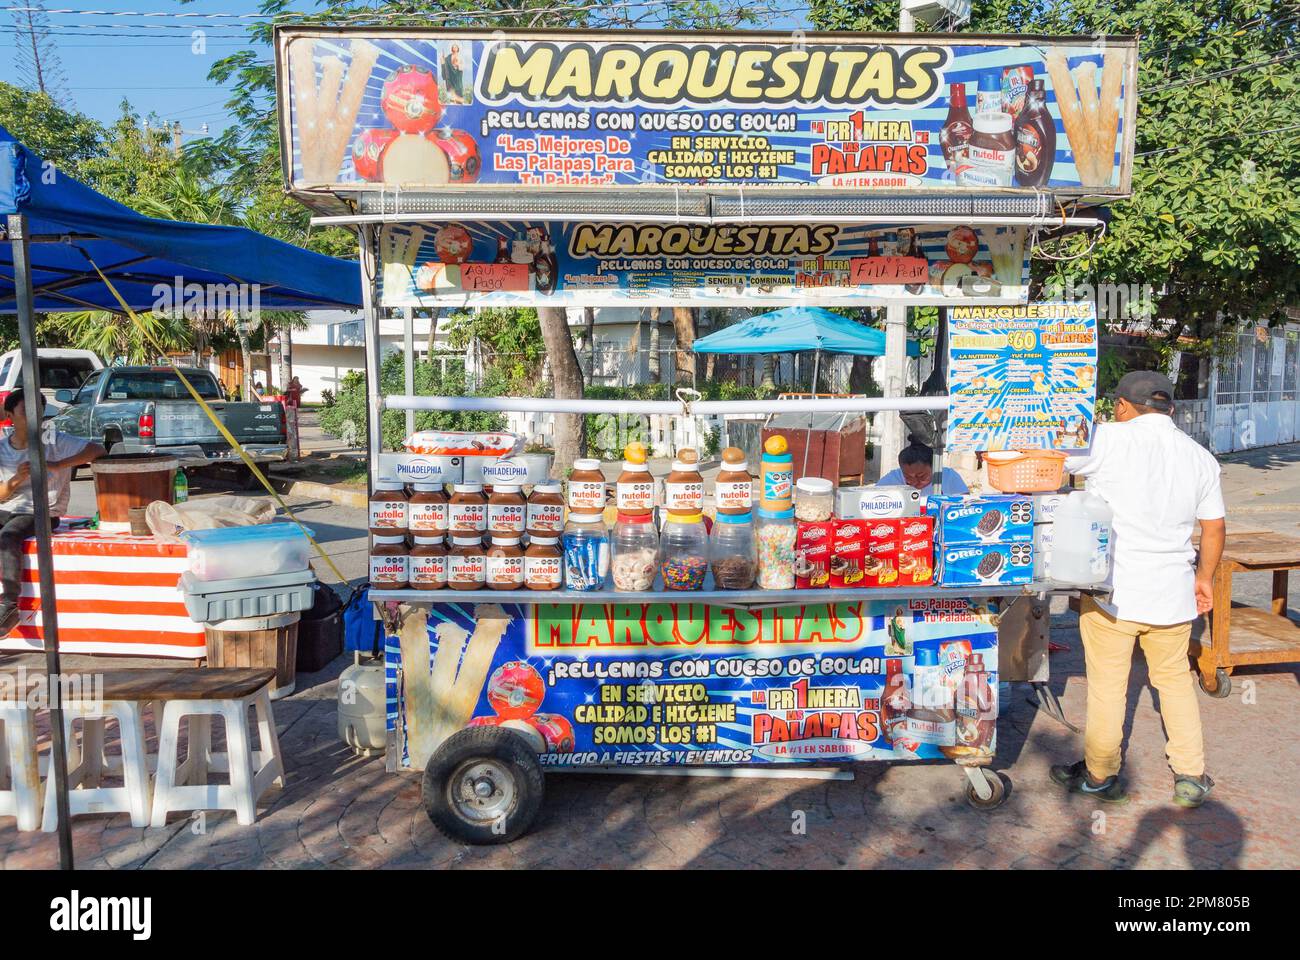 Cancun, Quintana Roo, Messico, gli stand di Marquesita che è un dessert messicano tradizionale originario di Merida Foto Stock